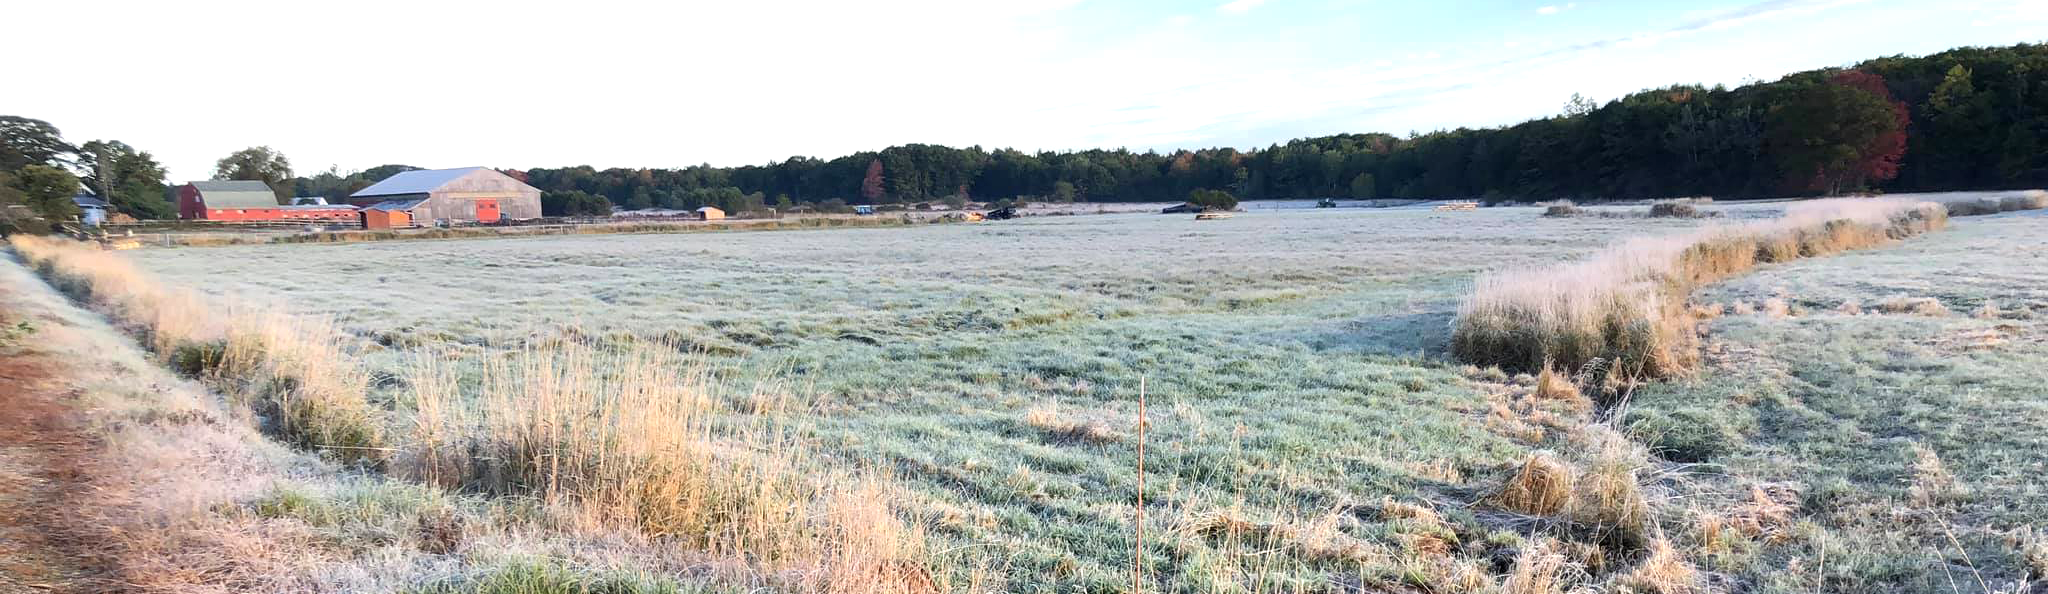 Frost on field